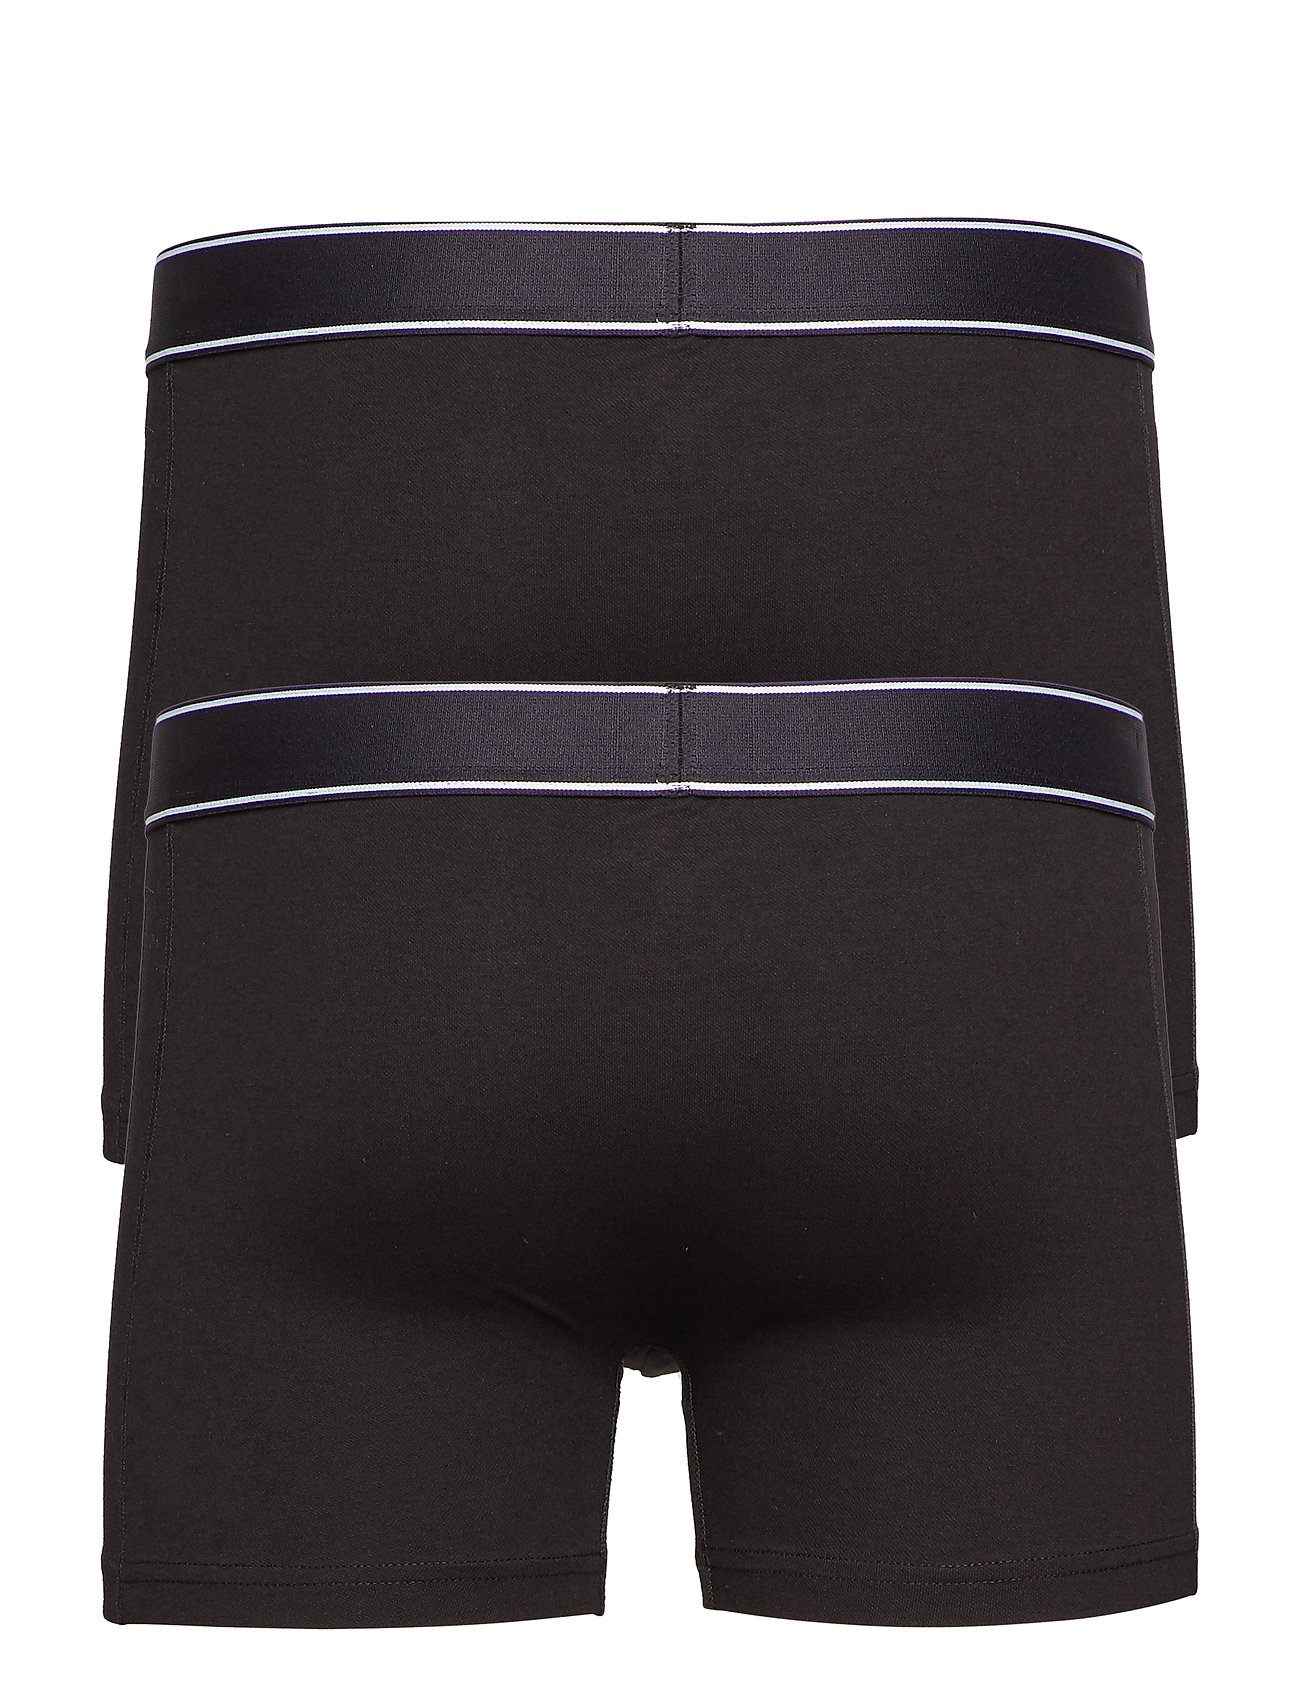 JBS of Denmark - JBS of DK tights 2-pack - multipack underpants - black - 1